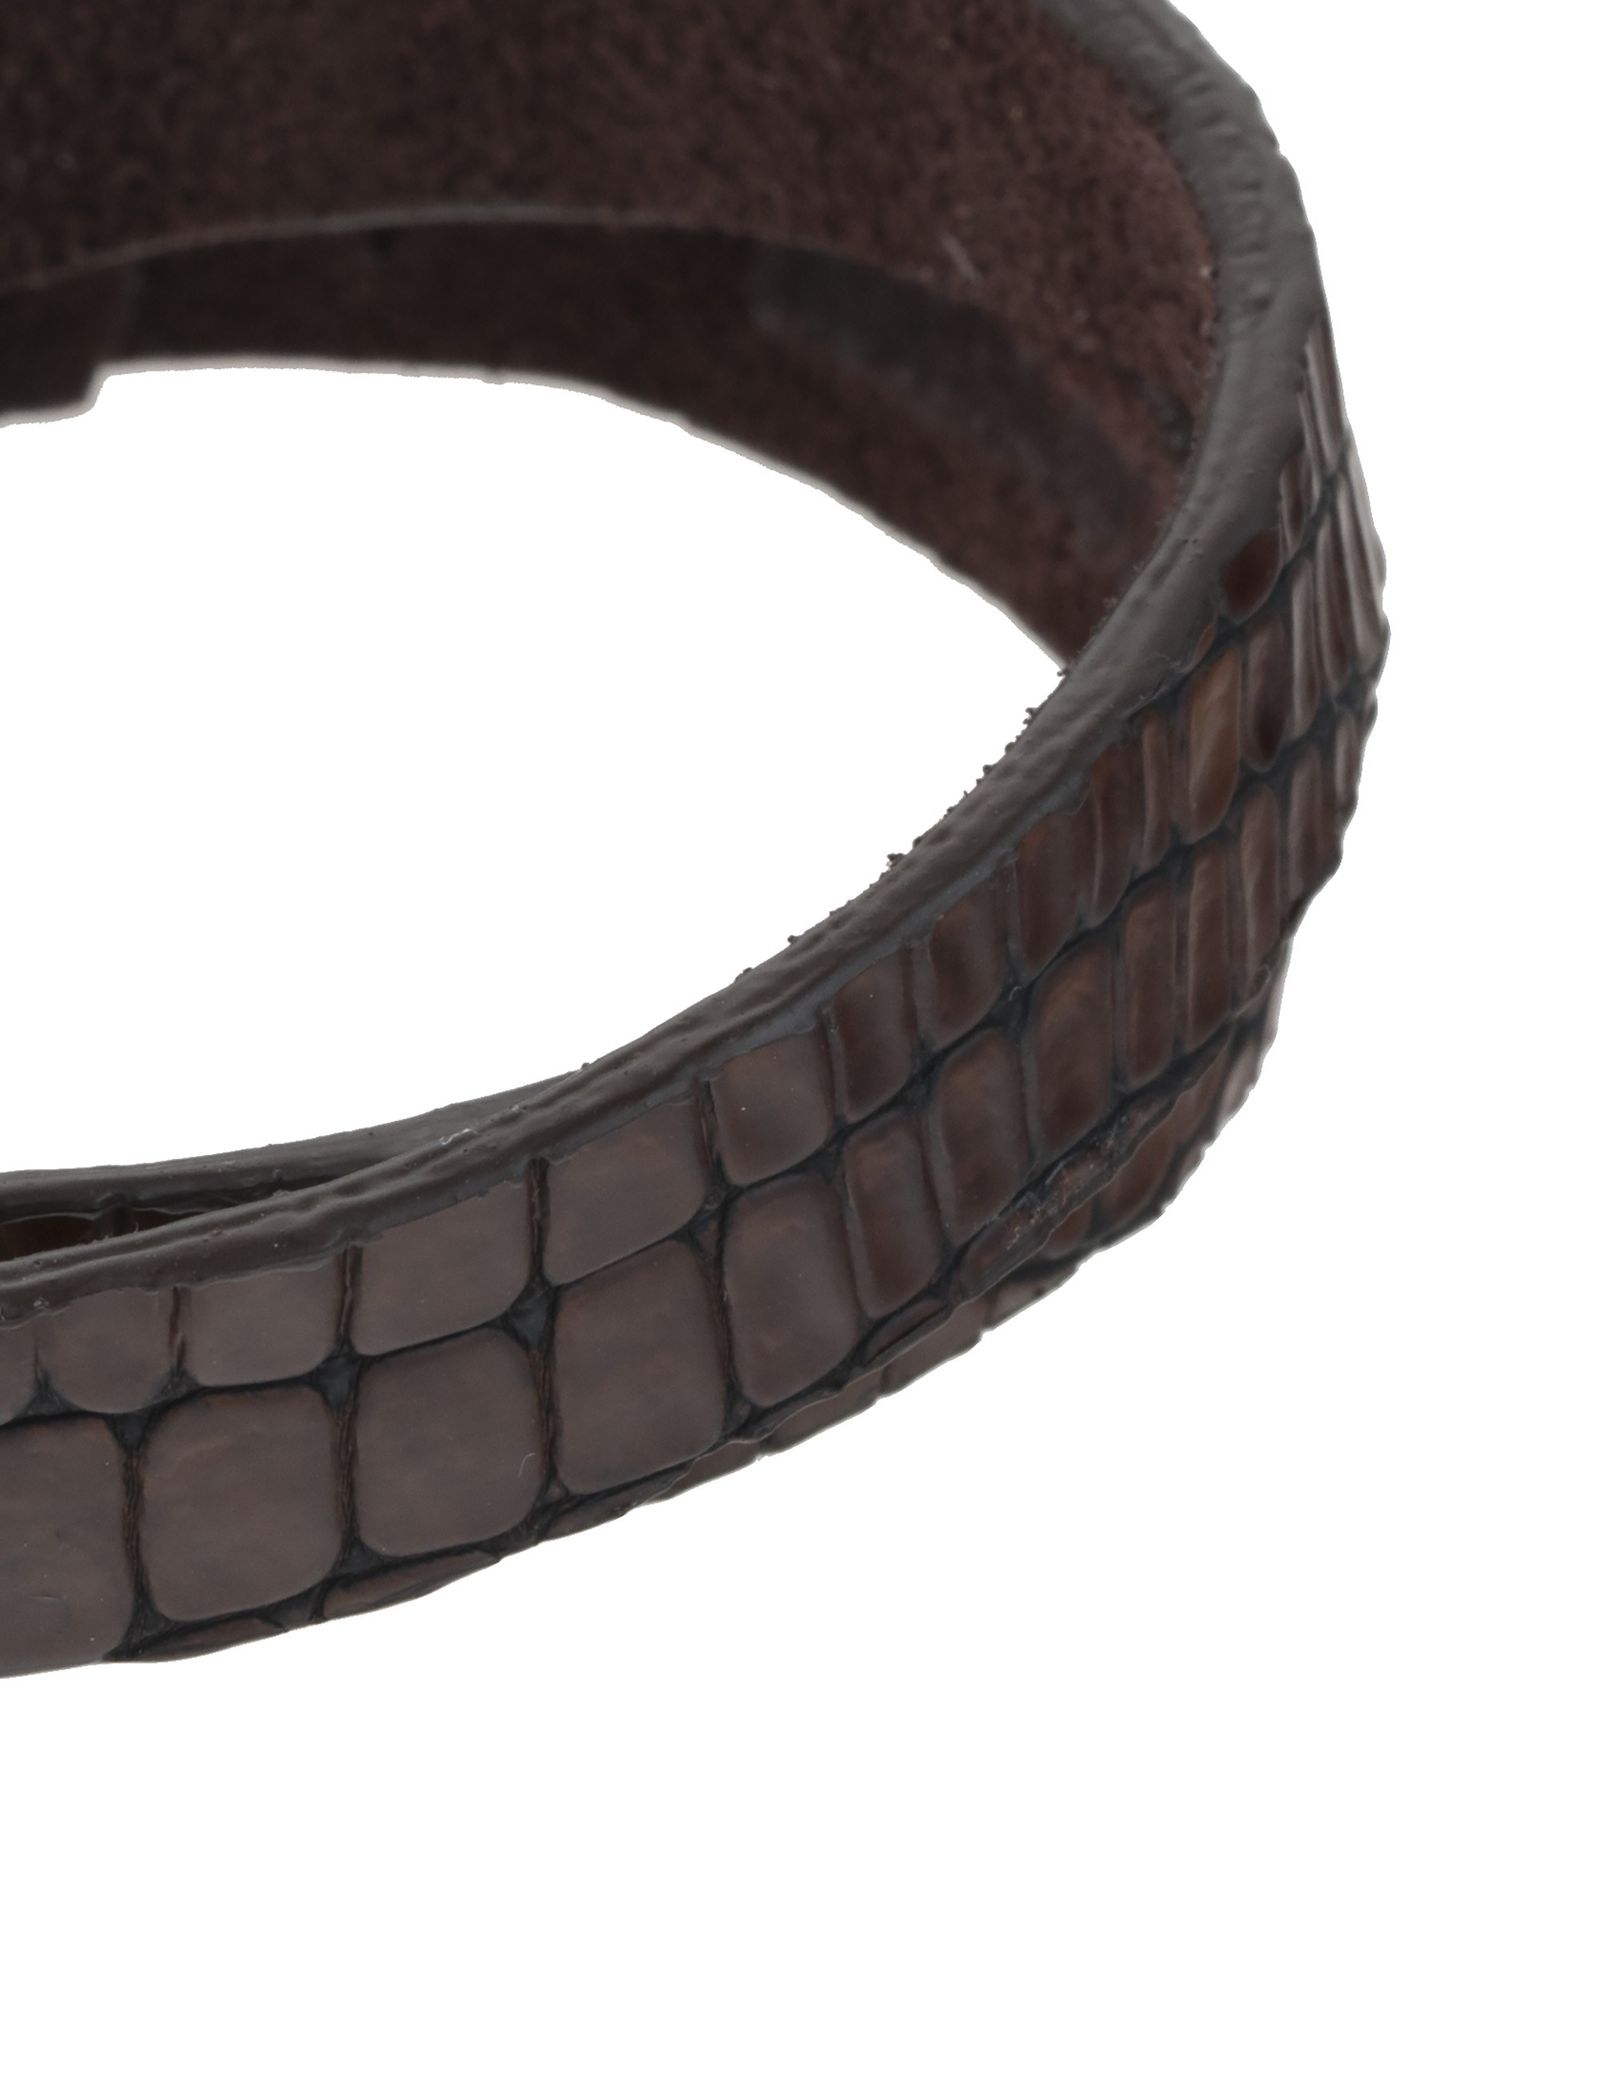 دستبند چرم مردانه - ماکو دیزاین سایز 43 cm - قهوه اي - 4